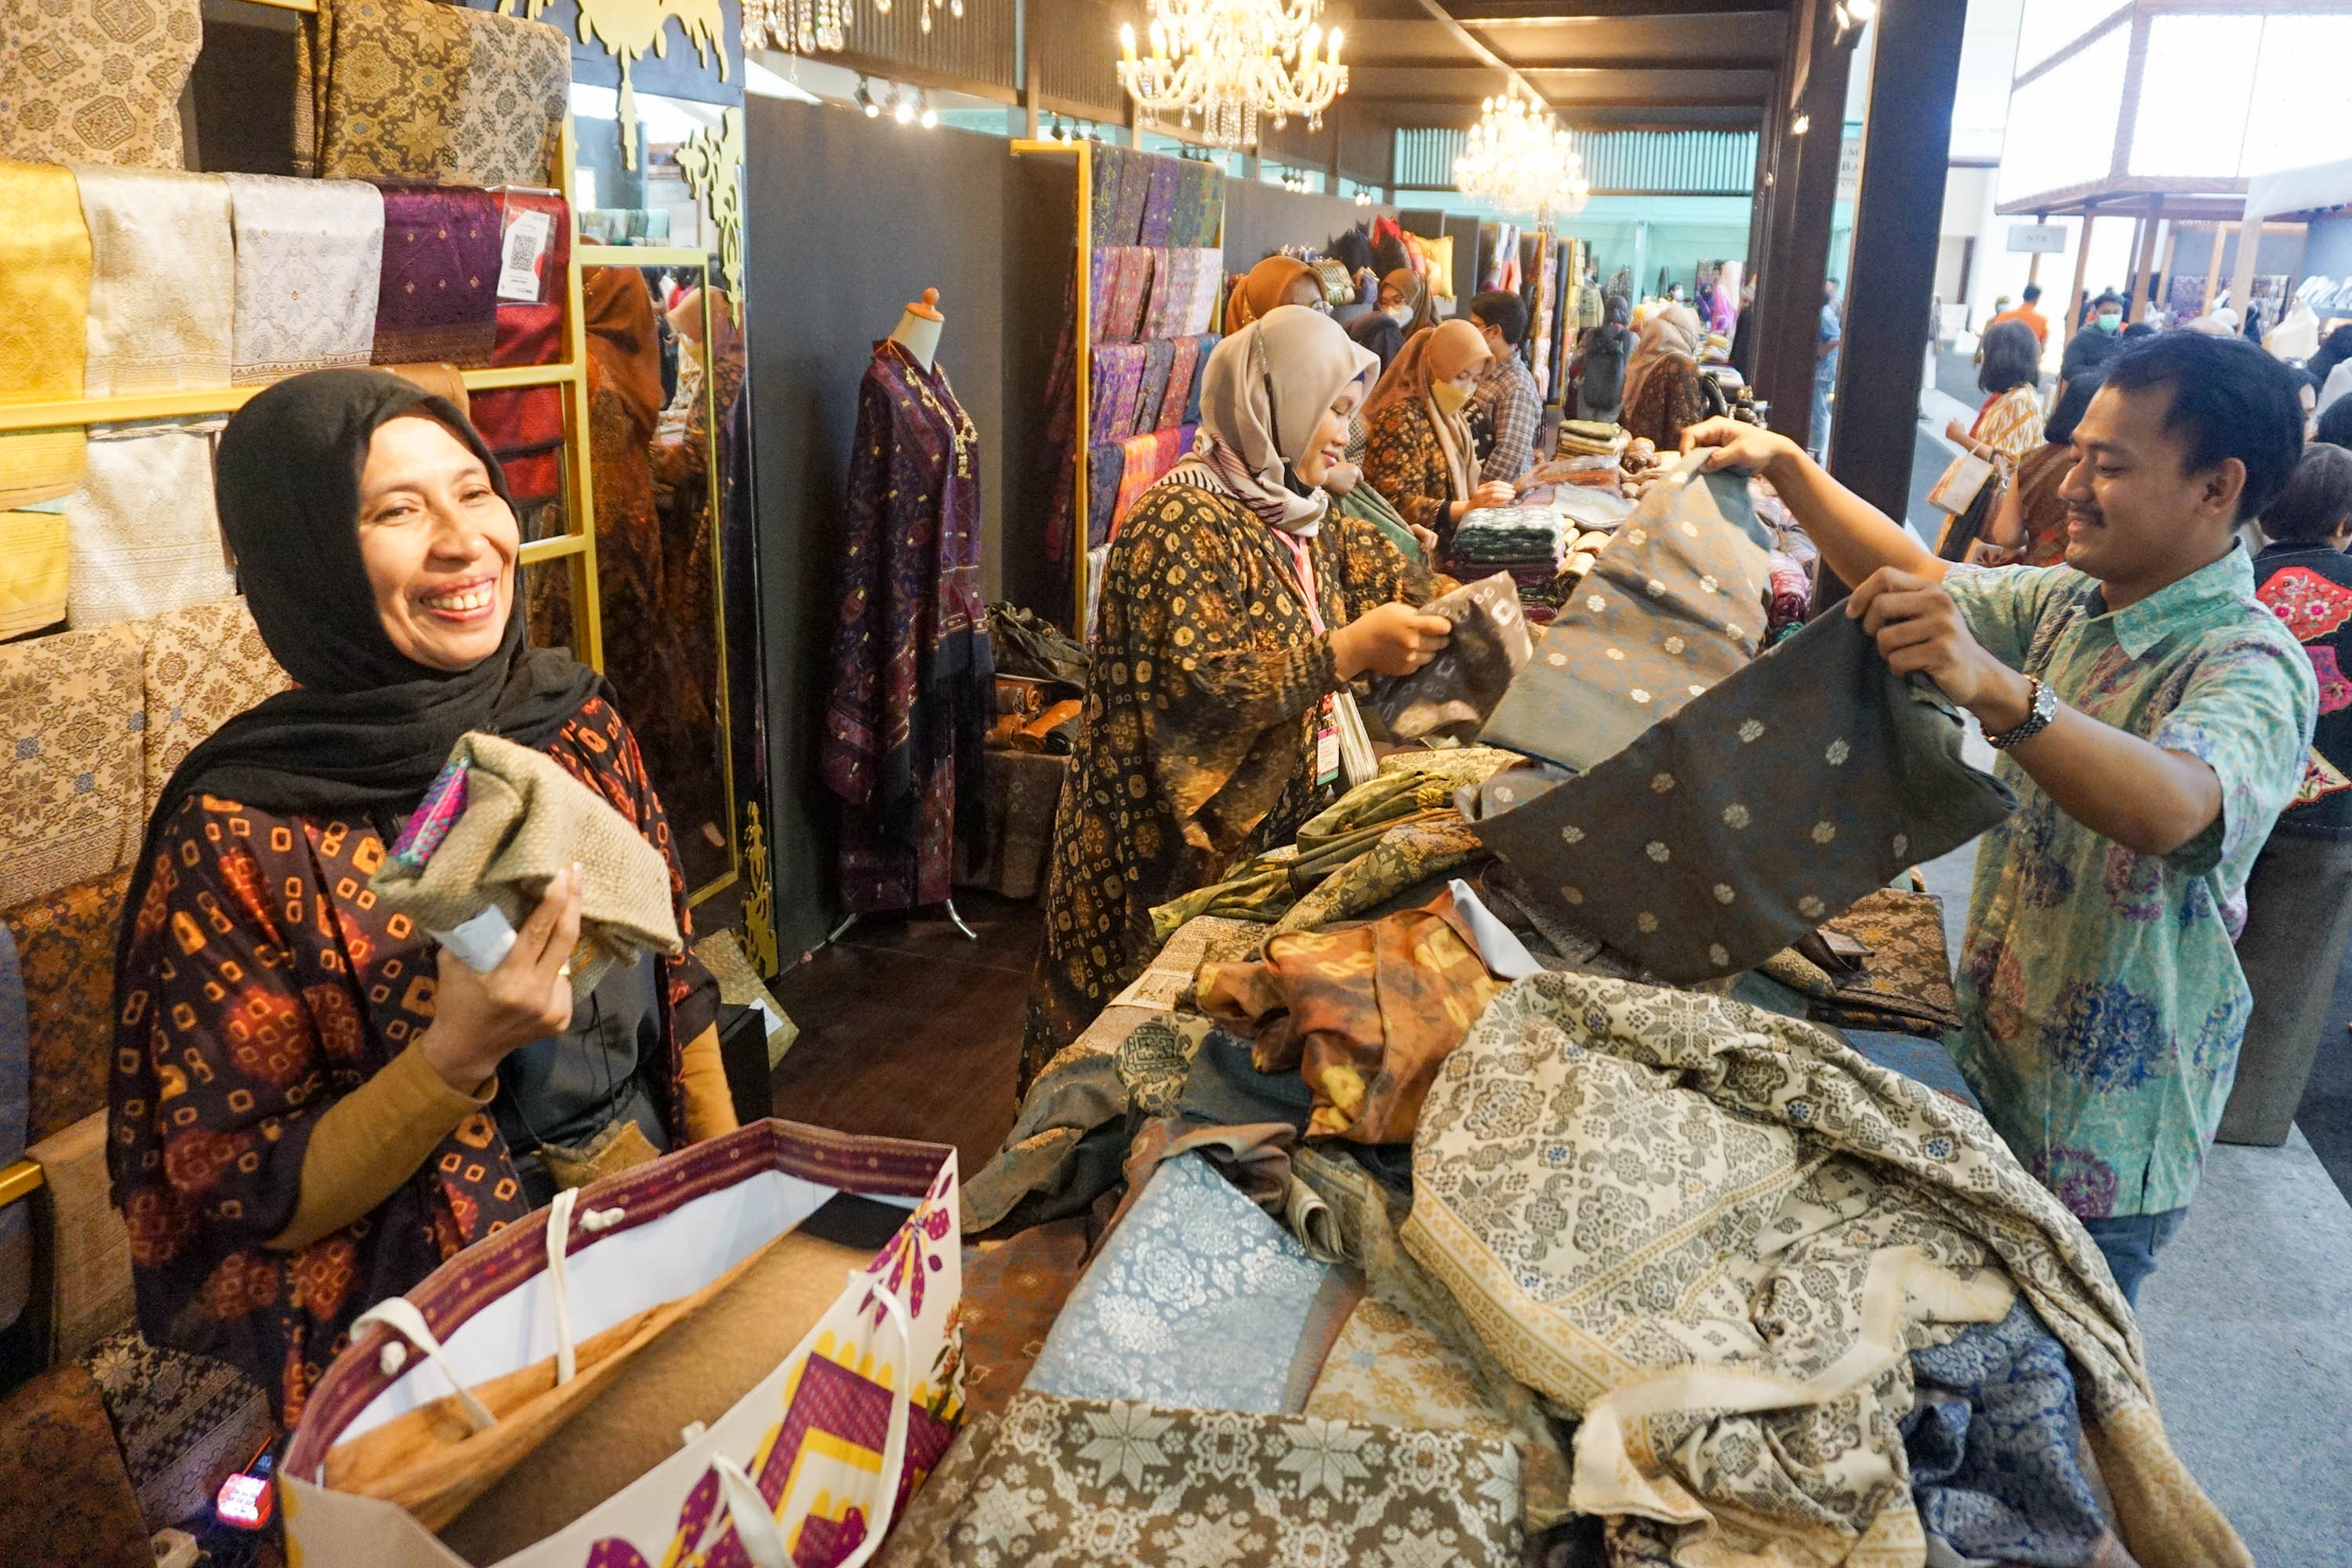 Pemaran kerajinan menjadi salah satu cara mendorong ekspor kerajinan Indonesia. Foto: Ismail Pohan/TrenAsia